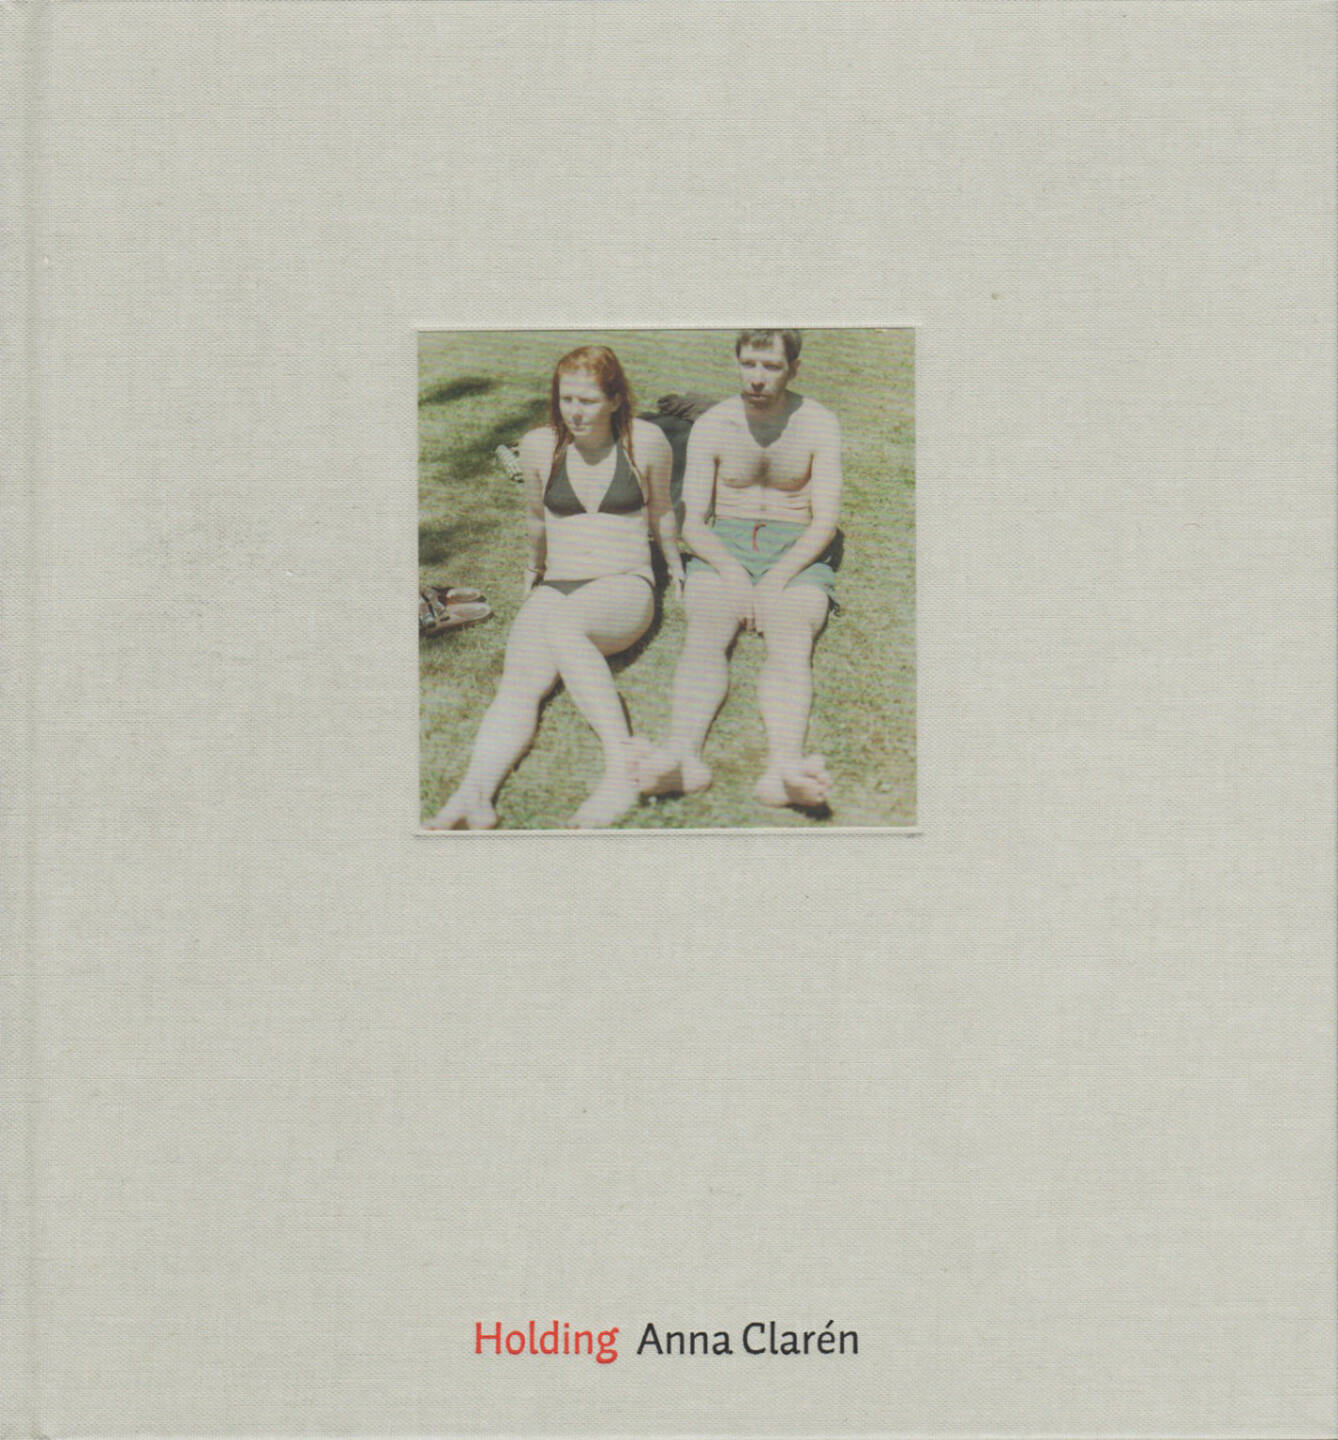 Anna Clarén - Holding (2006) - 150-250 Euro, http://josefchladek.com/book/anna_claren_-_holding